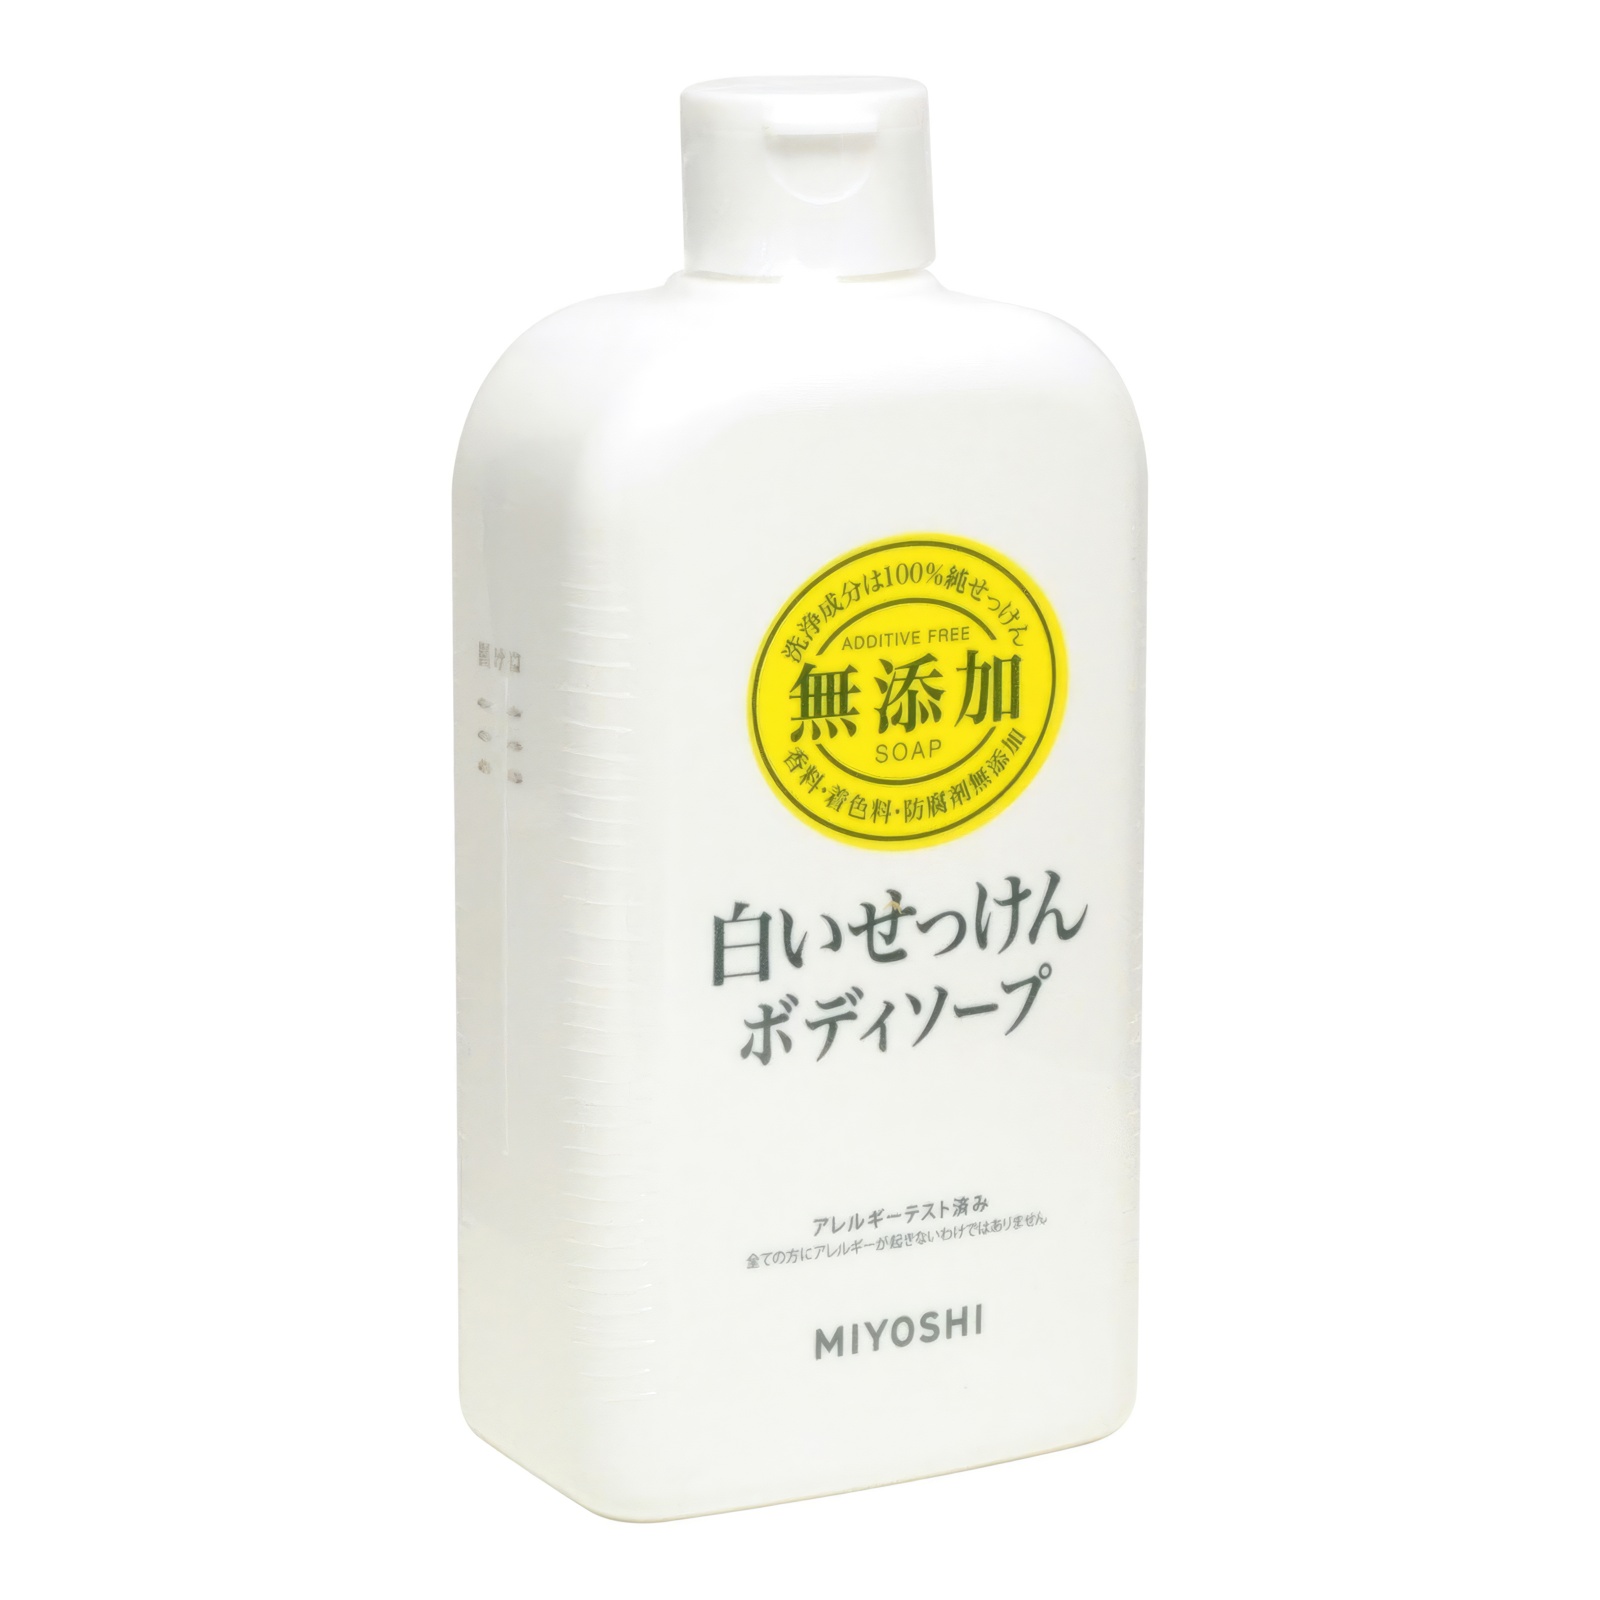 Натуральное жидкое гель-мыло MIYOSHI эко для тела 400 мл мыльная основа sb craft 10 кг